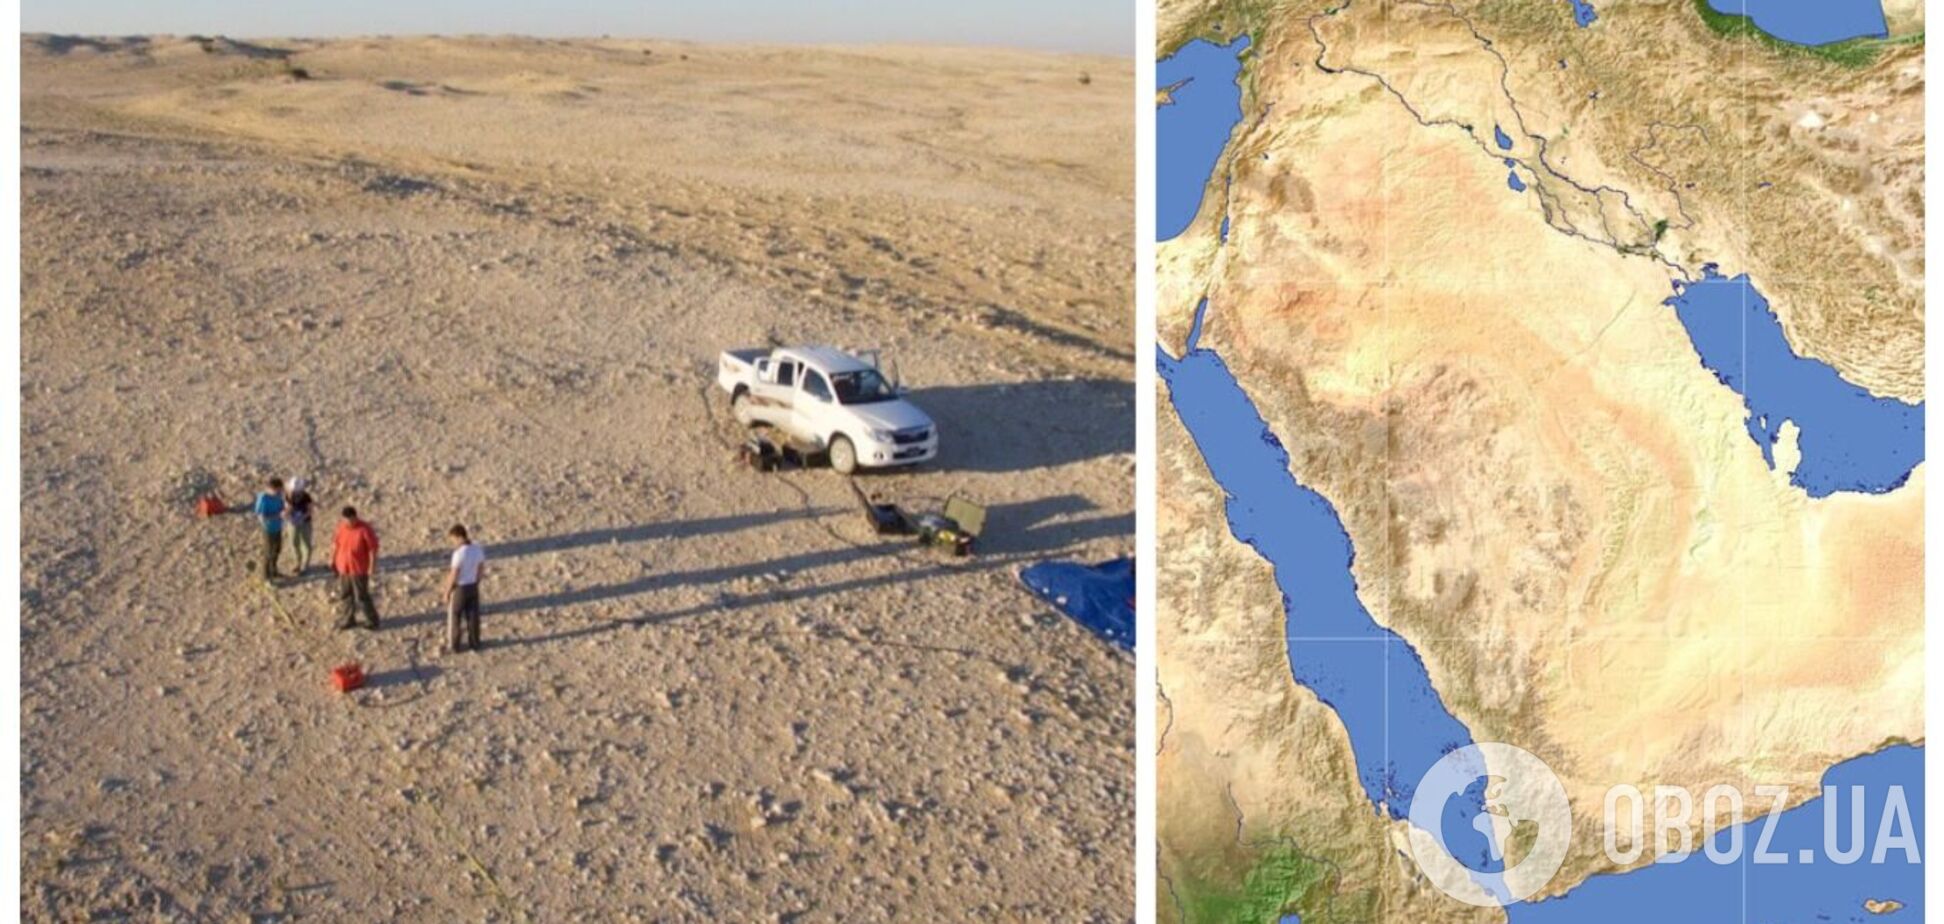 Археологи обнаружили в пустыне Катара следы поселения, которому 3600 лет. Фото и видео